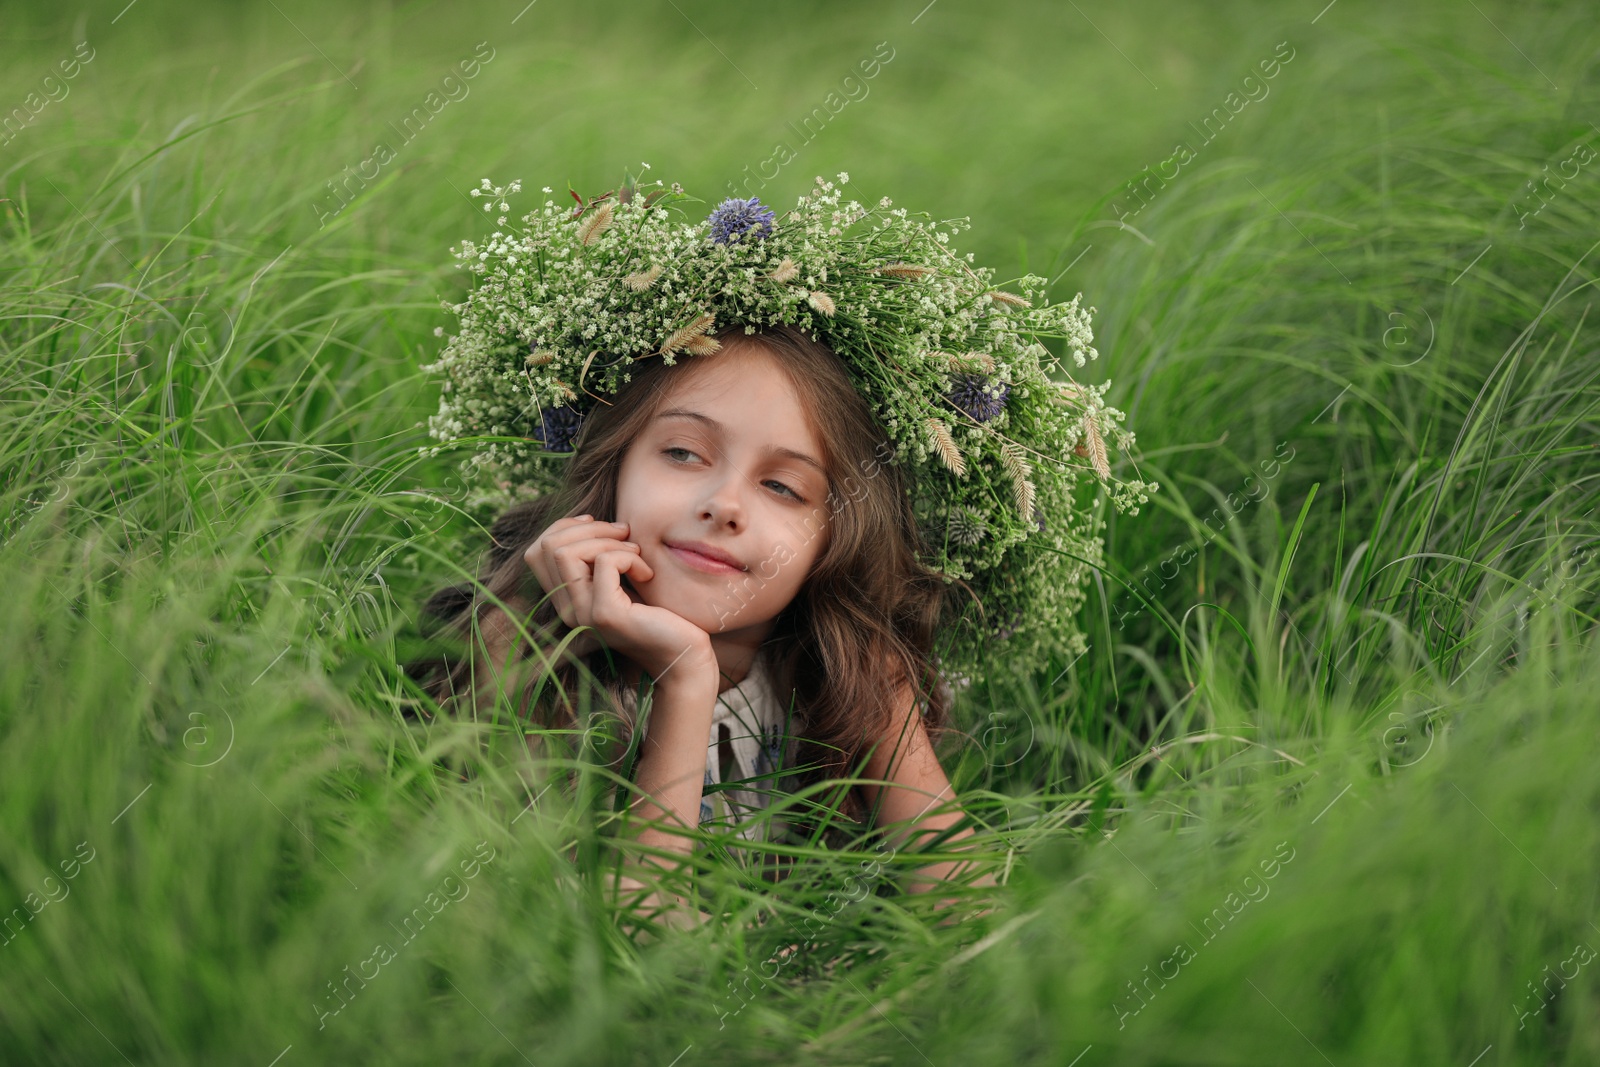 Photo of Cute little girl wearing wreath made of beautiful flowers in field